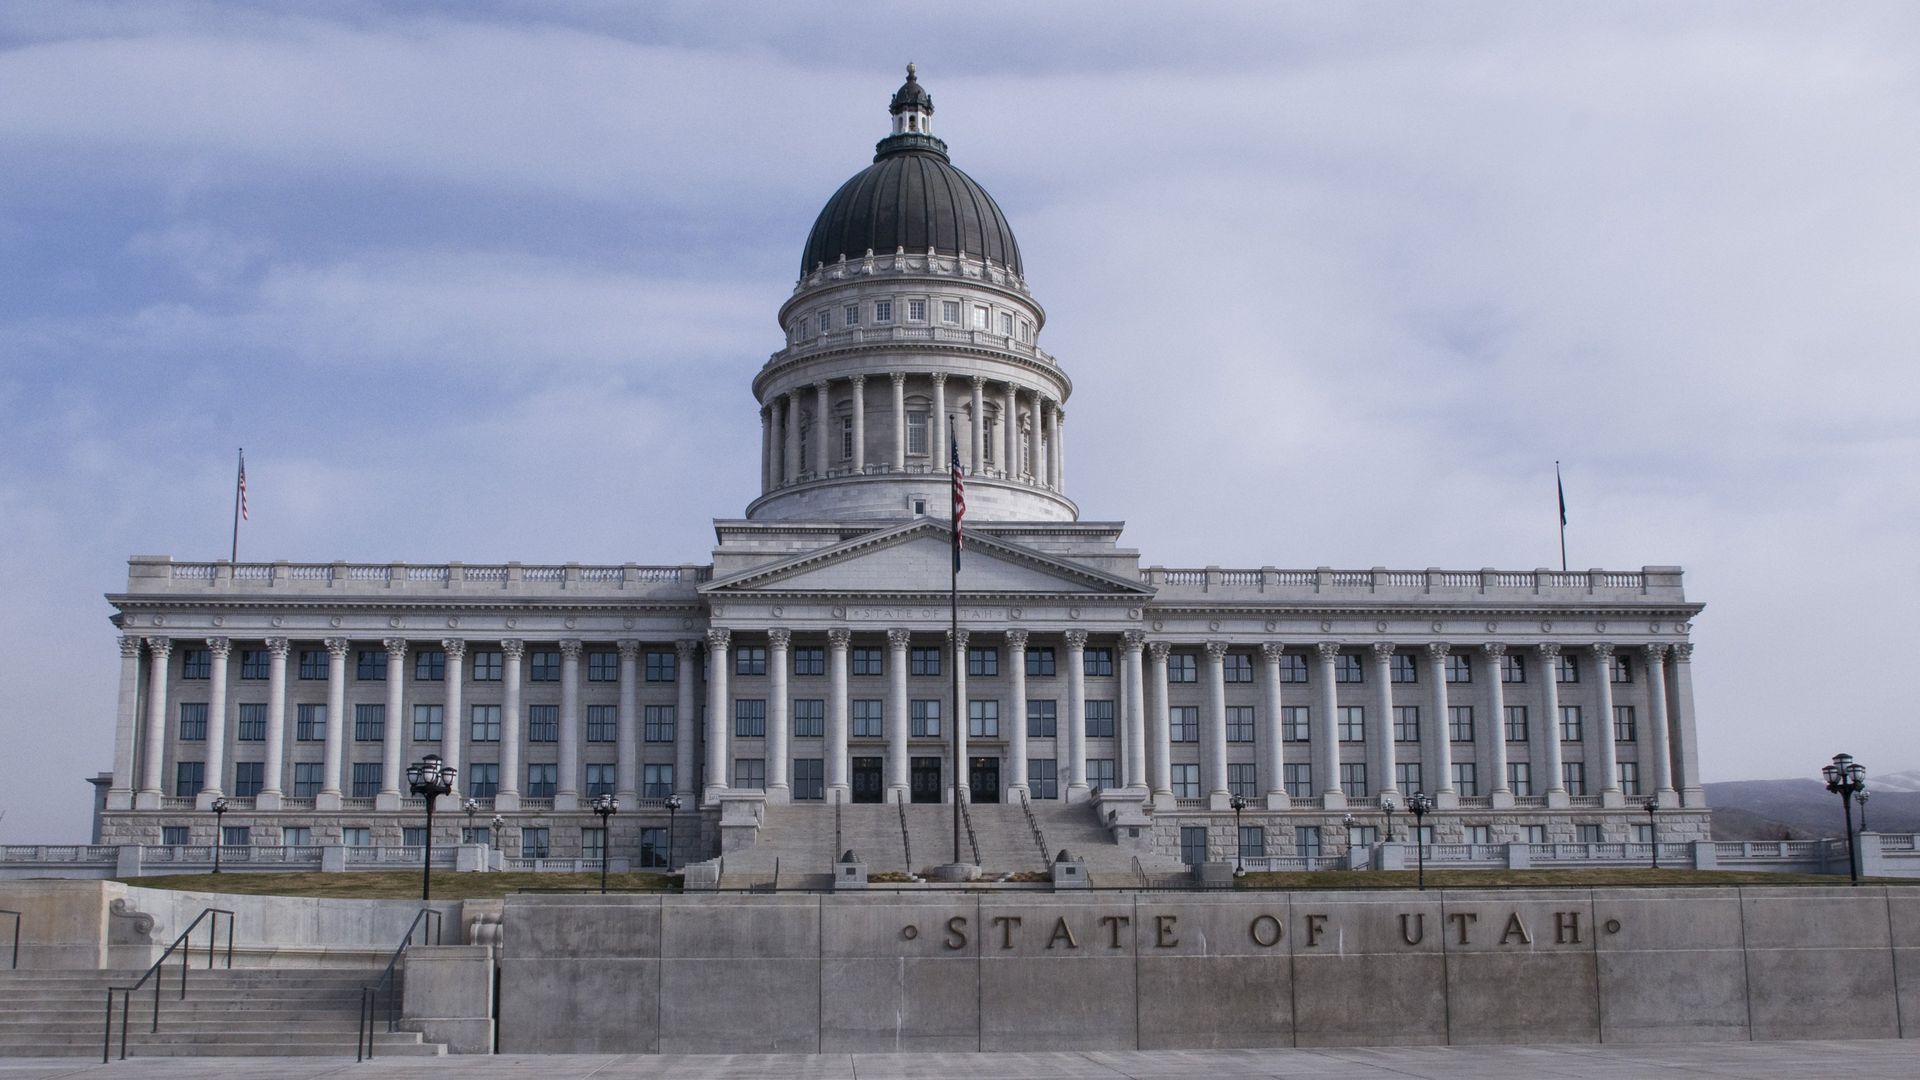 Utah's State Capitol building in Salt Lake City.